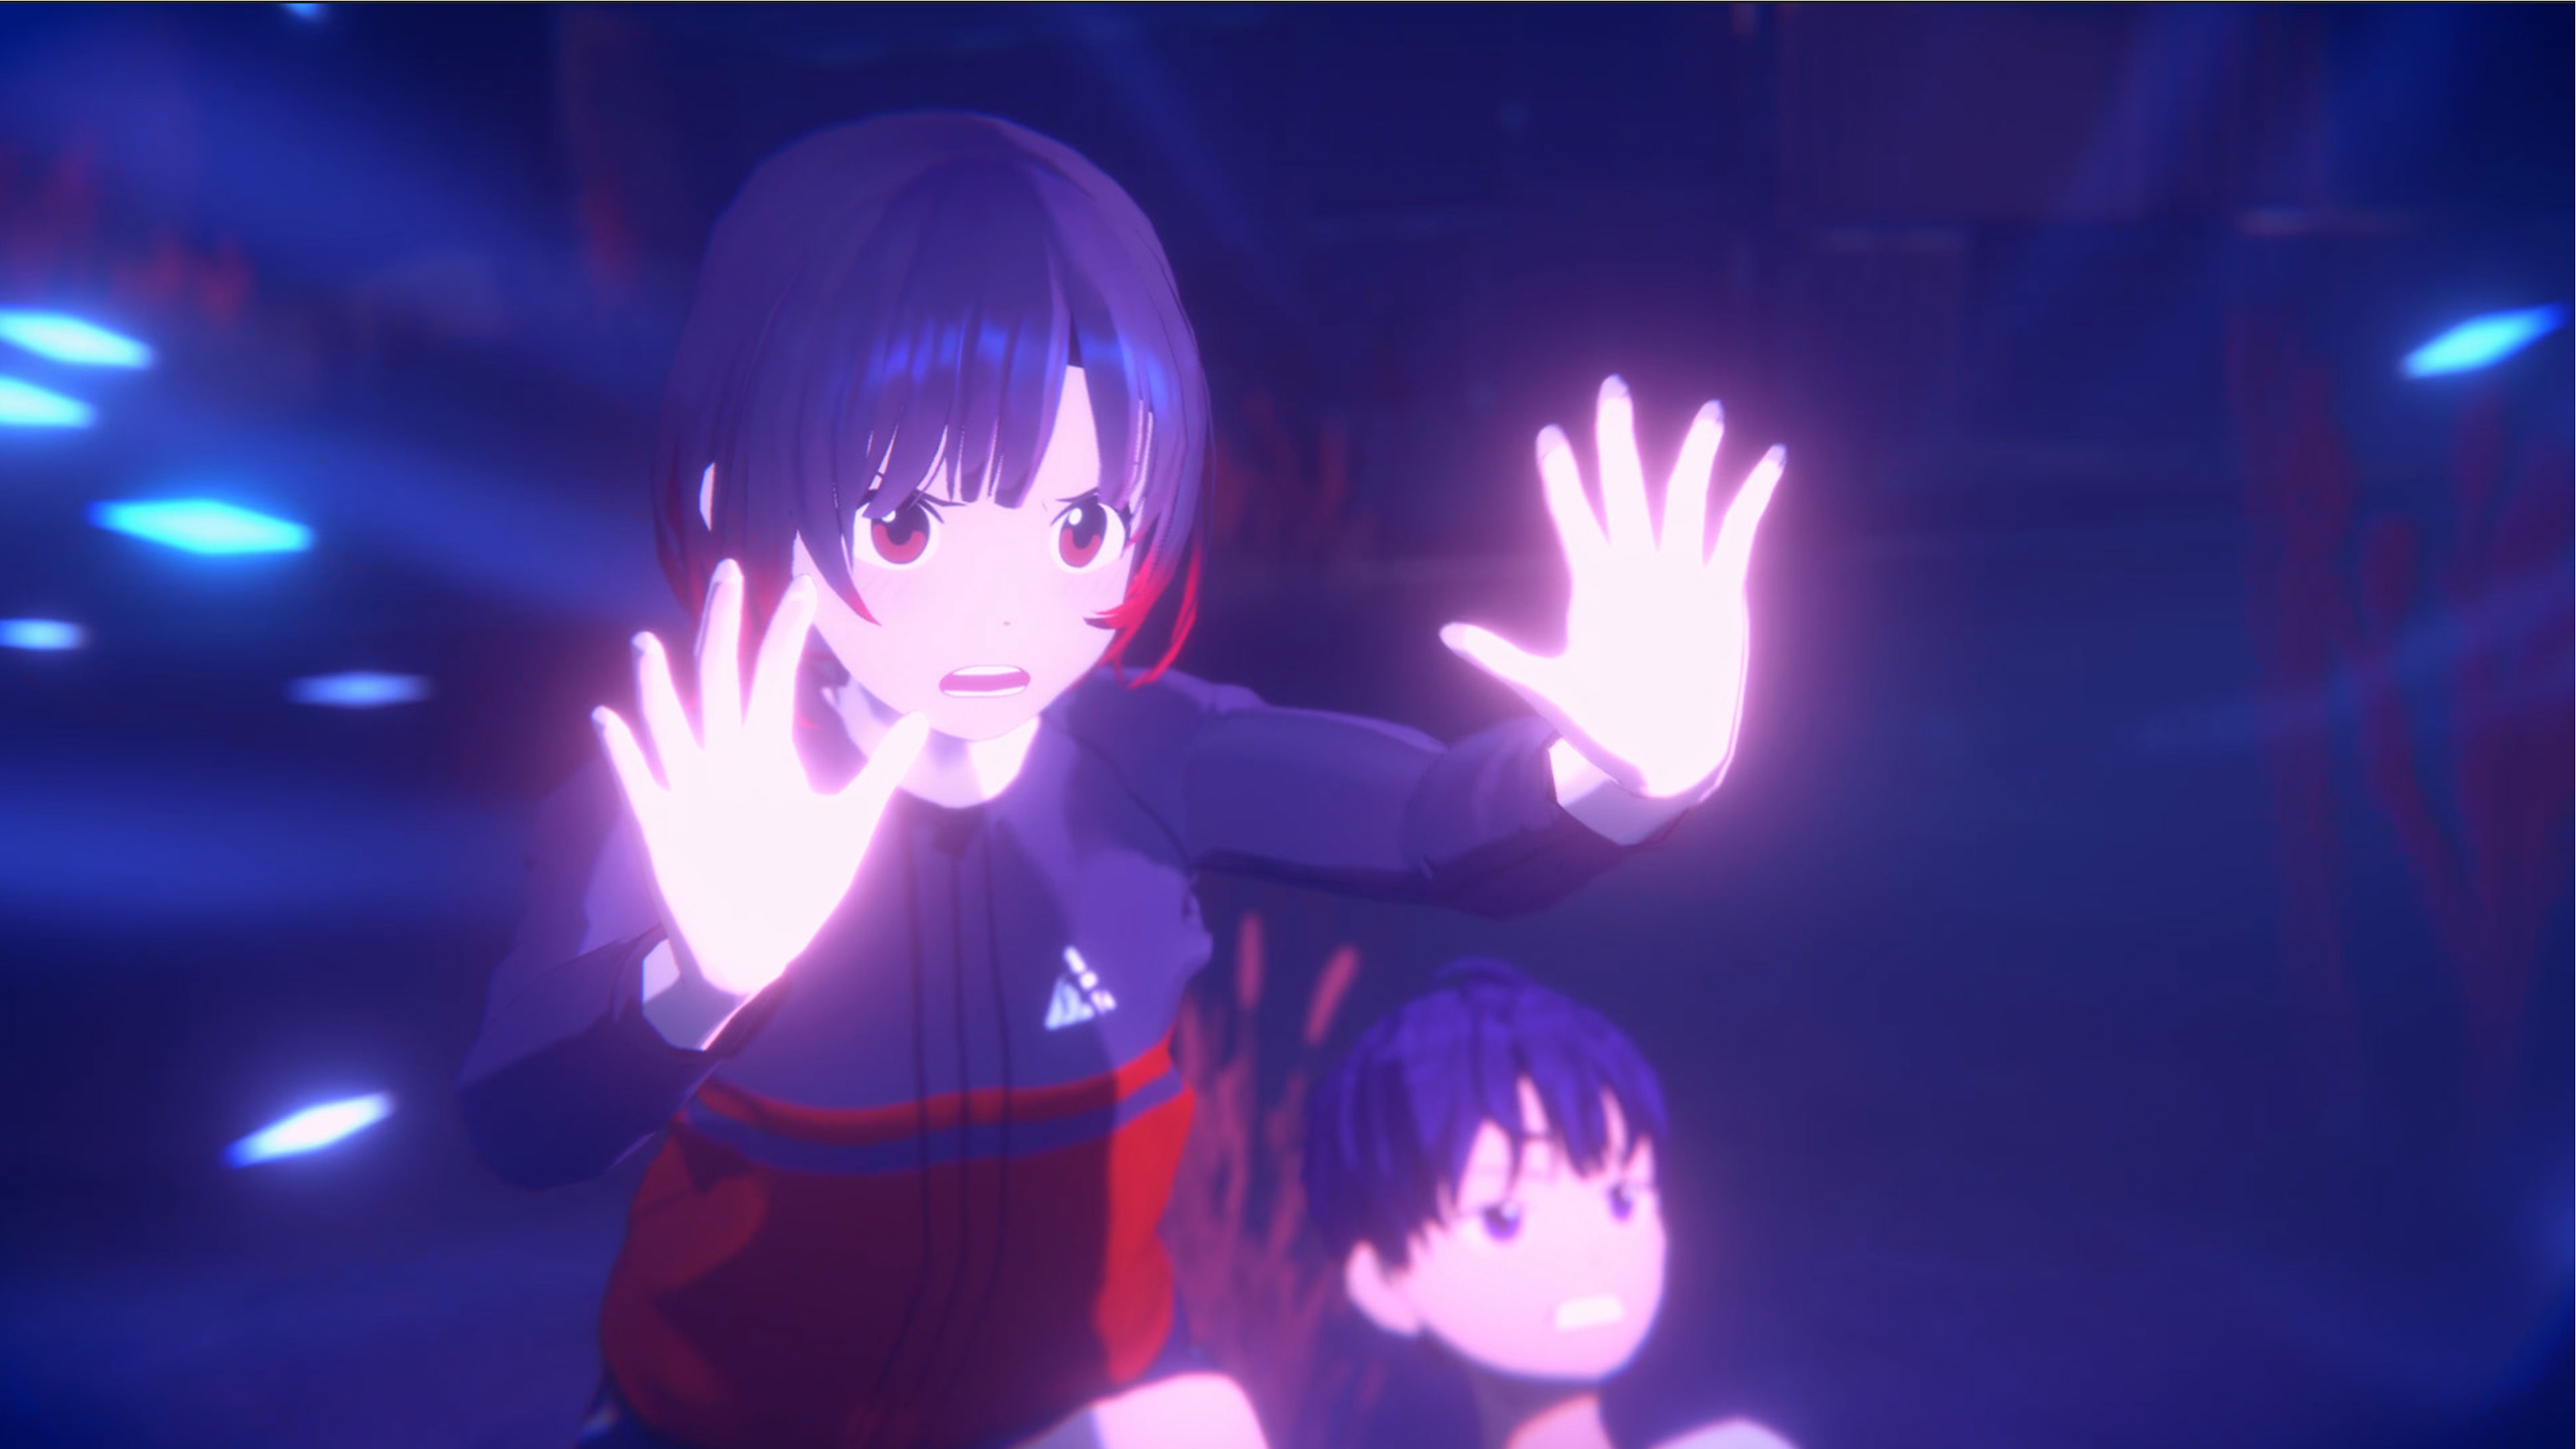 Eternights screenshot featuring a high school girl warding off an unseen assailant.